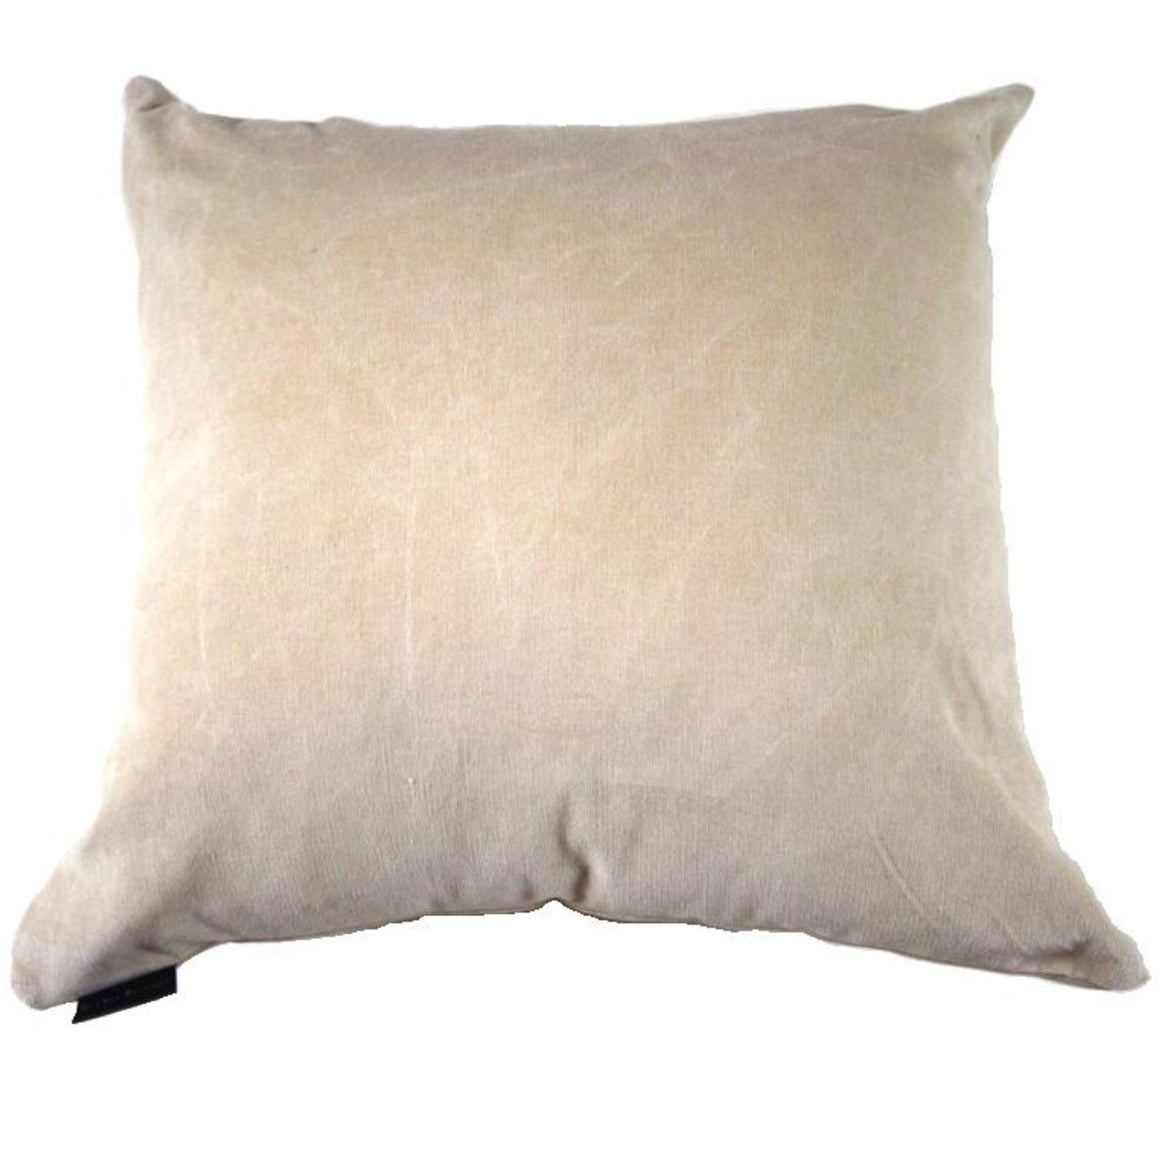 Desta - Beige Stretchy Velvet Pillow Cover - 20x20